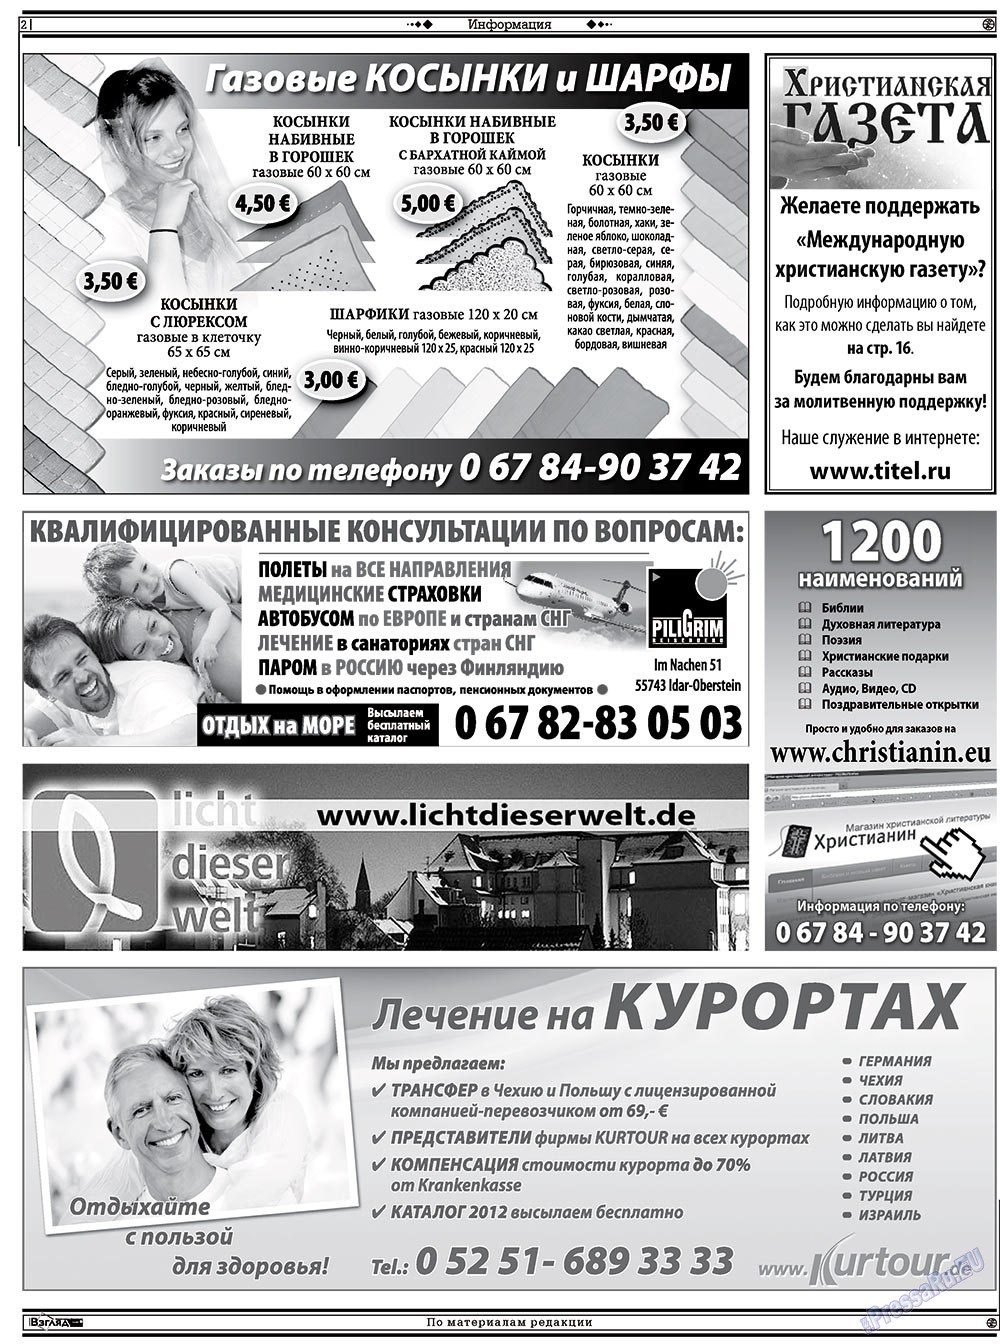 Христианская газета (газета). 2012 год, номер 4, стр. 16